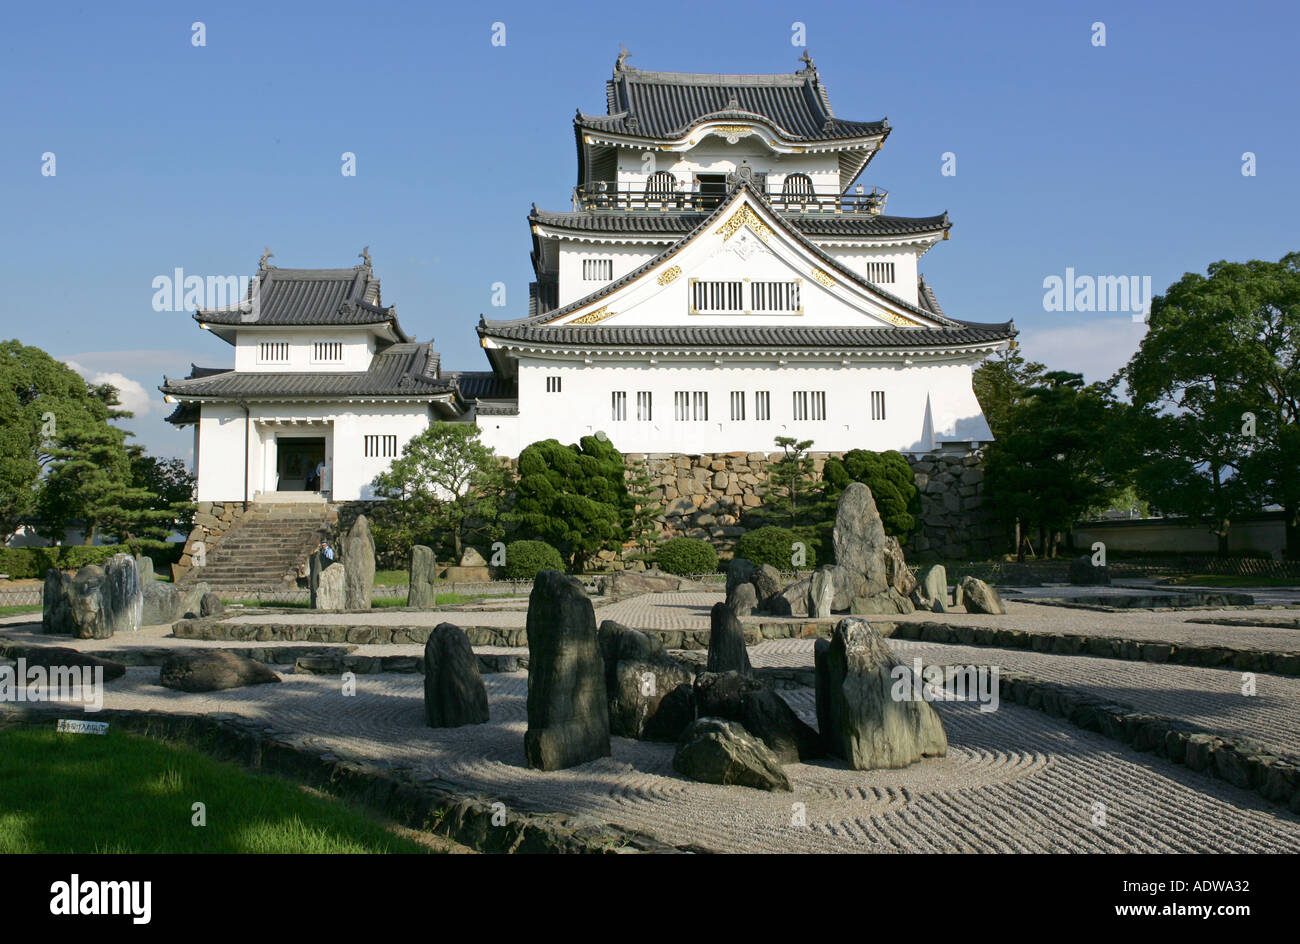 Kishiwada Jo castle and grounds with a perfect blue sky backdrop Kishiwada city Osaka Japan Asia Stock Photo